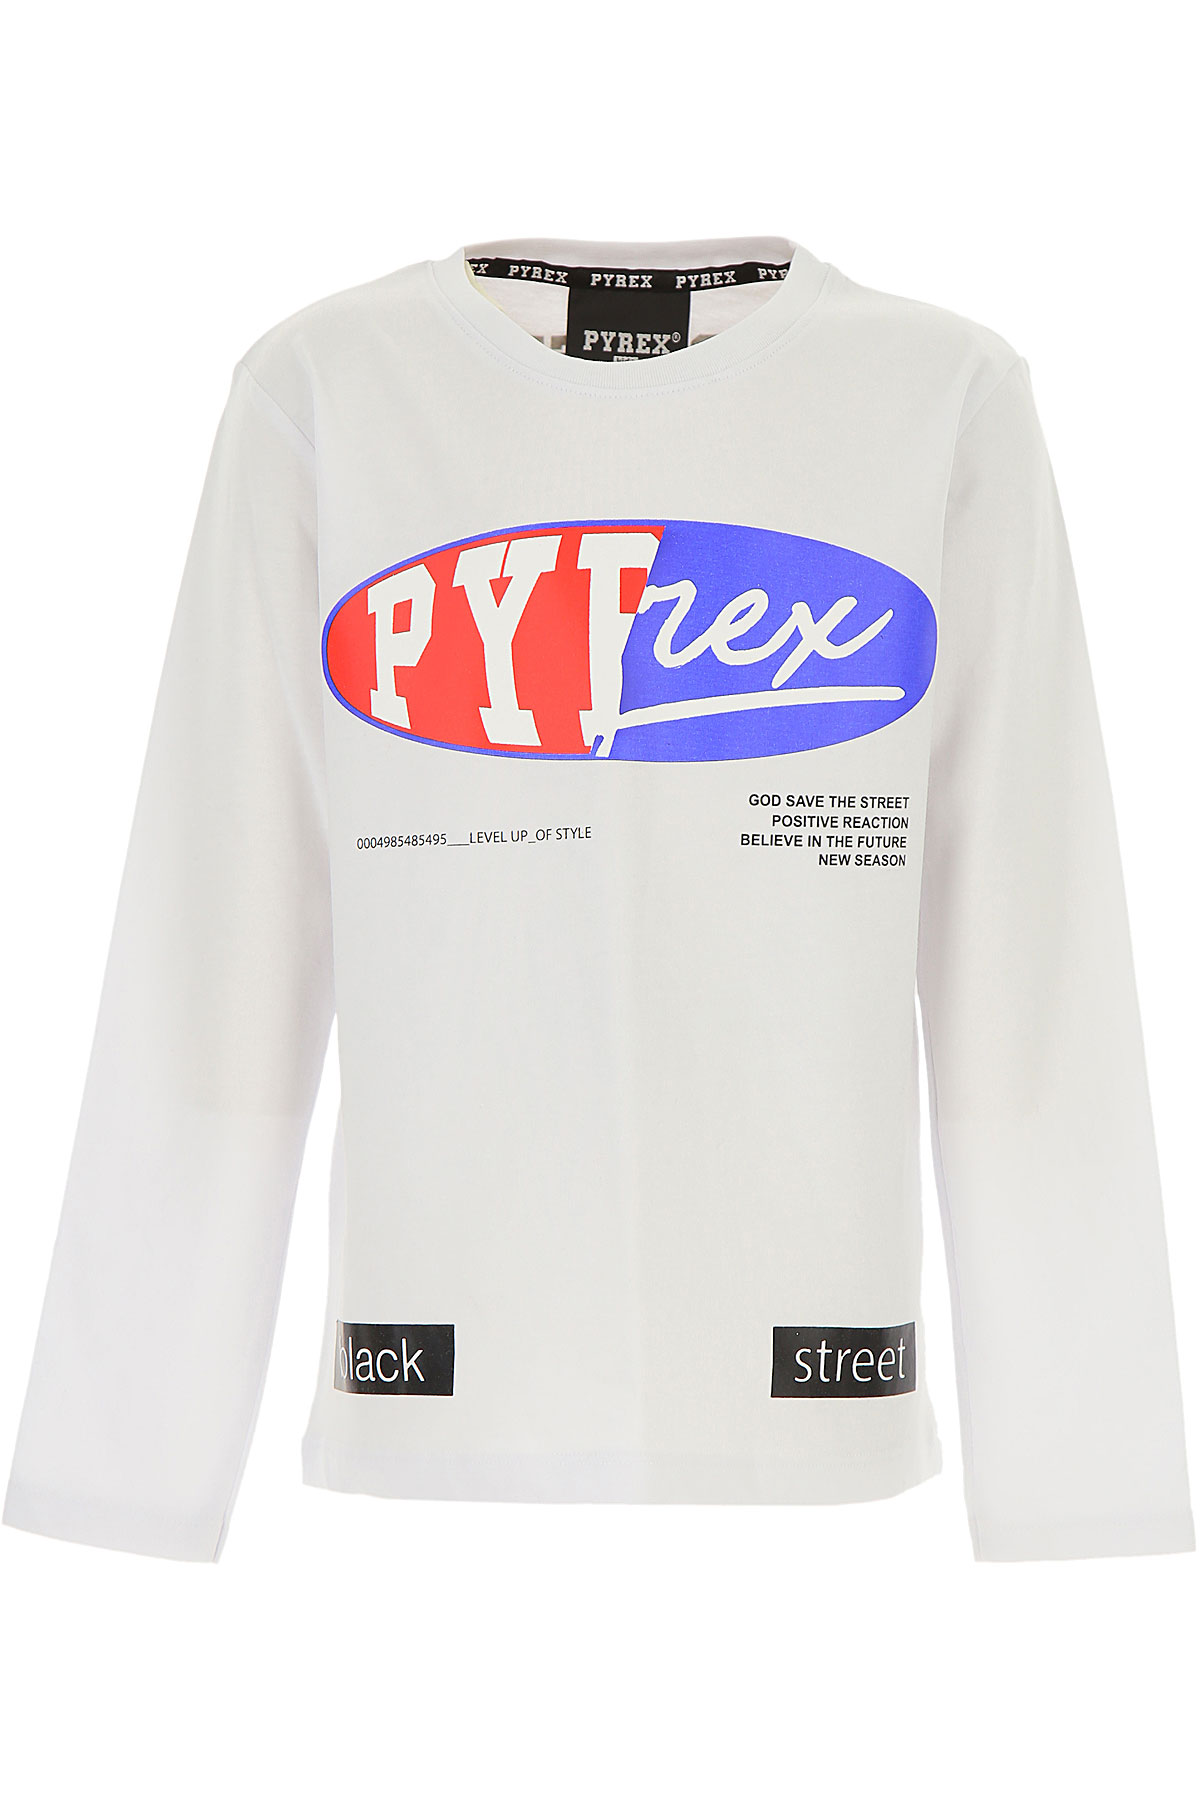 Pyrex Kinder T-Shirt für Jungen Günstig im Sale, Weiss, Baumwolle, 2017, L M S XXL (16 Y)